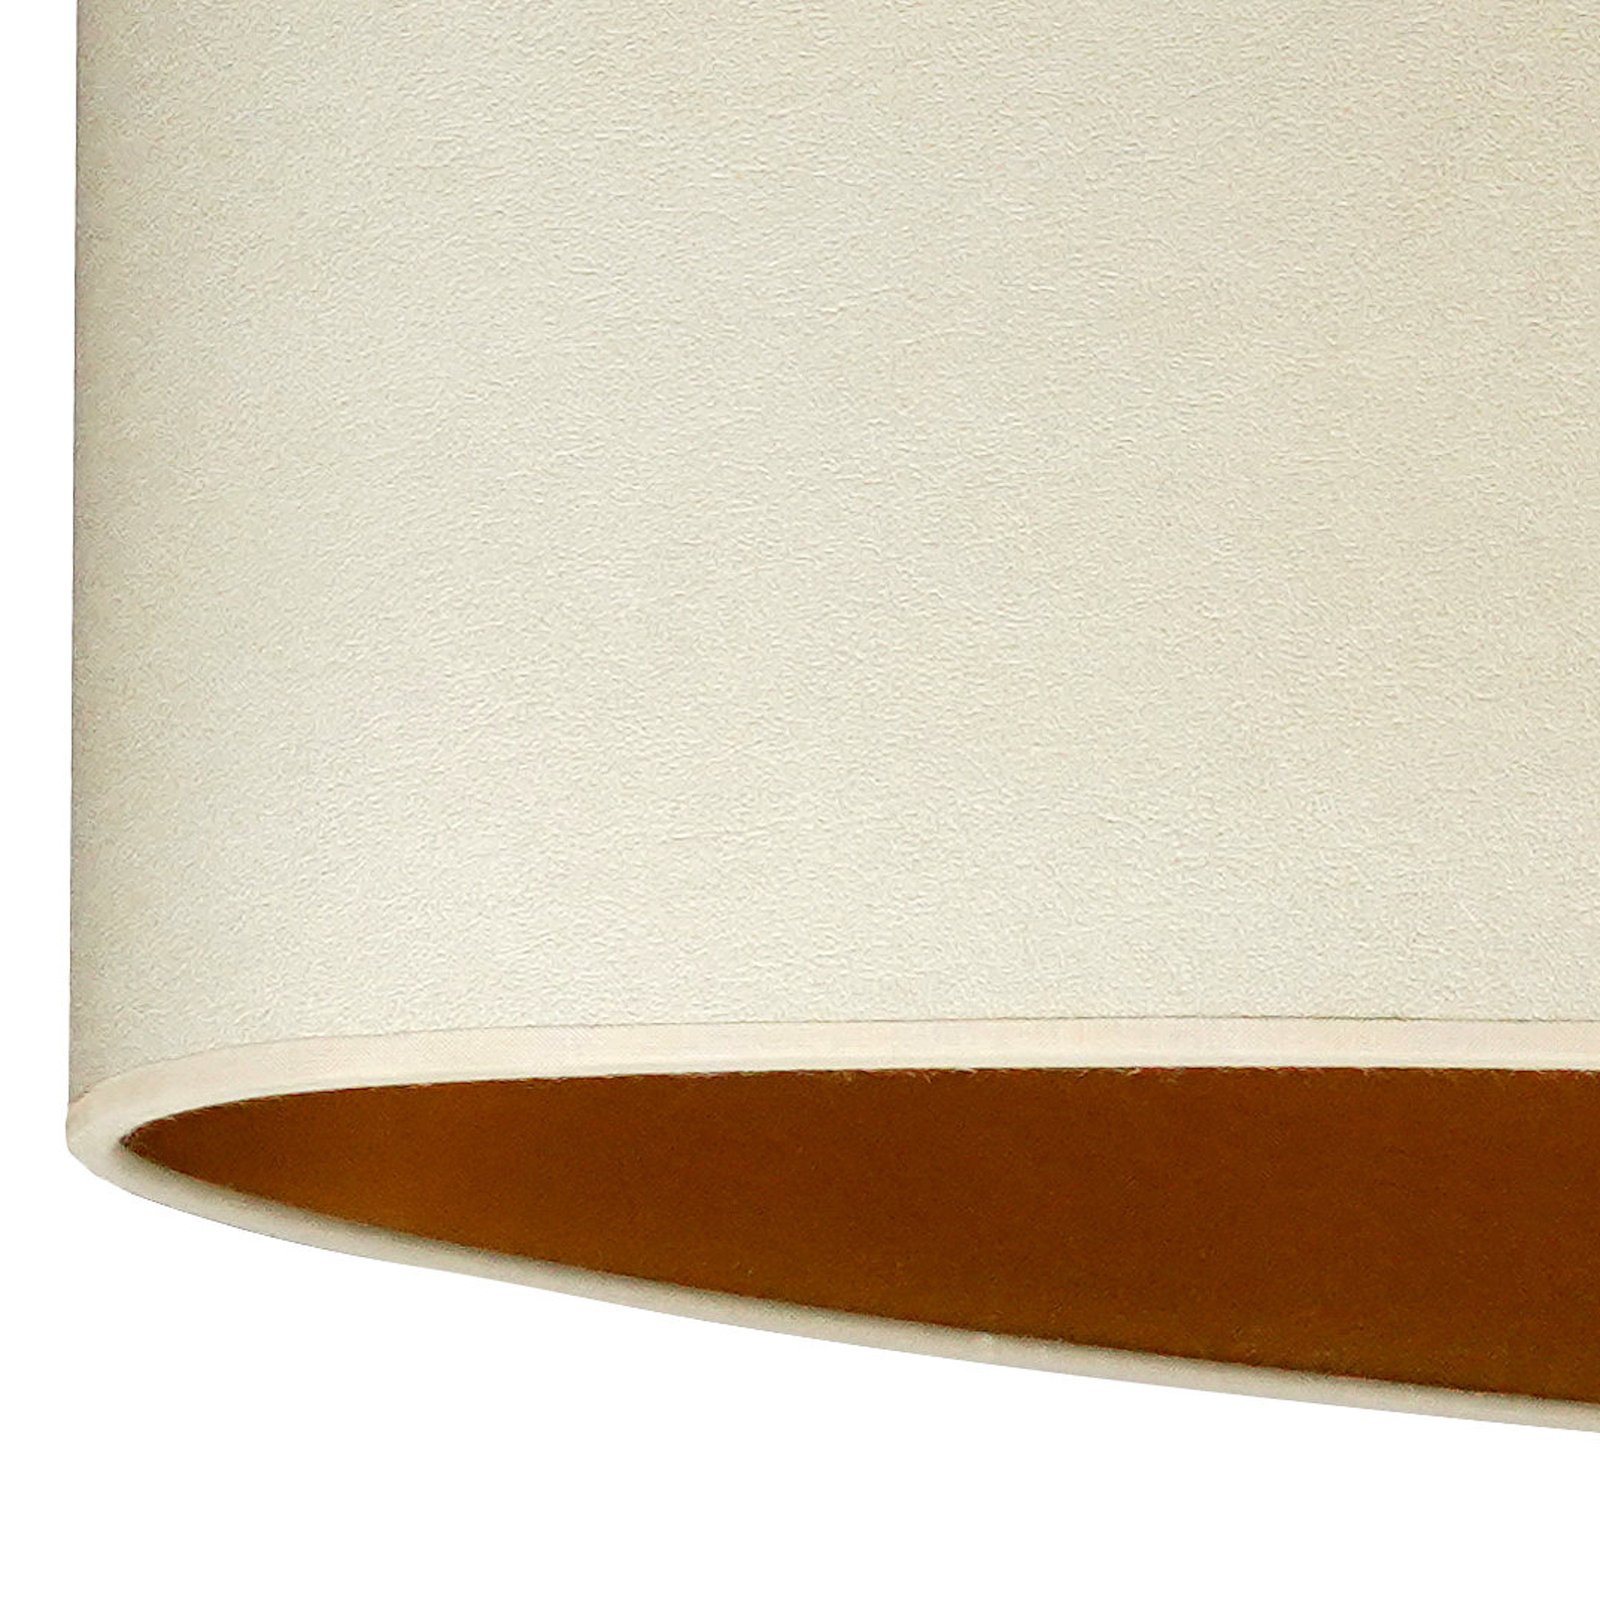 Envostar hanglamp Idun licht beige, kunstleer veganistisch, 80 cm